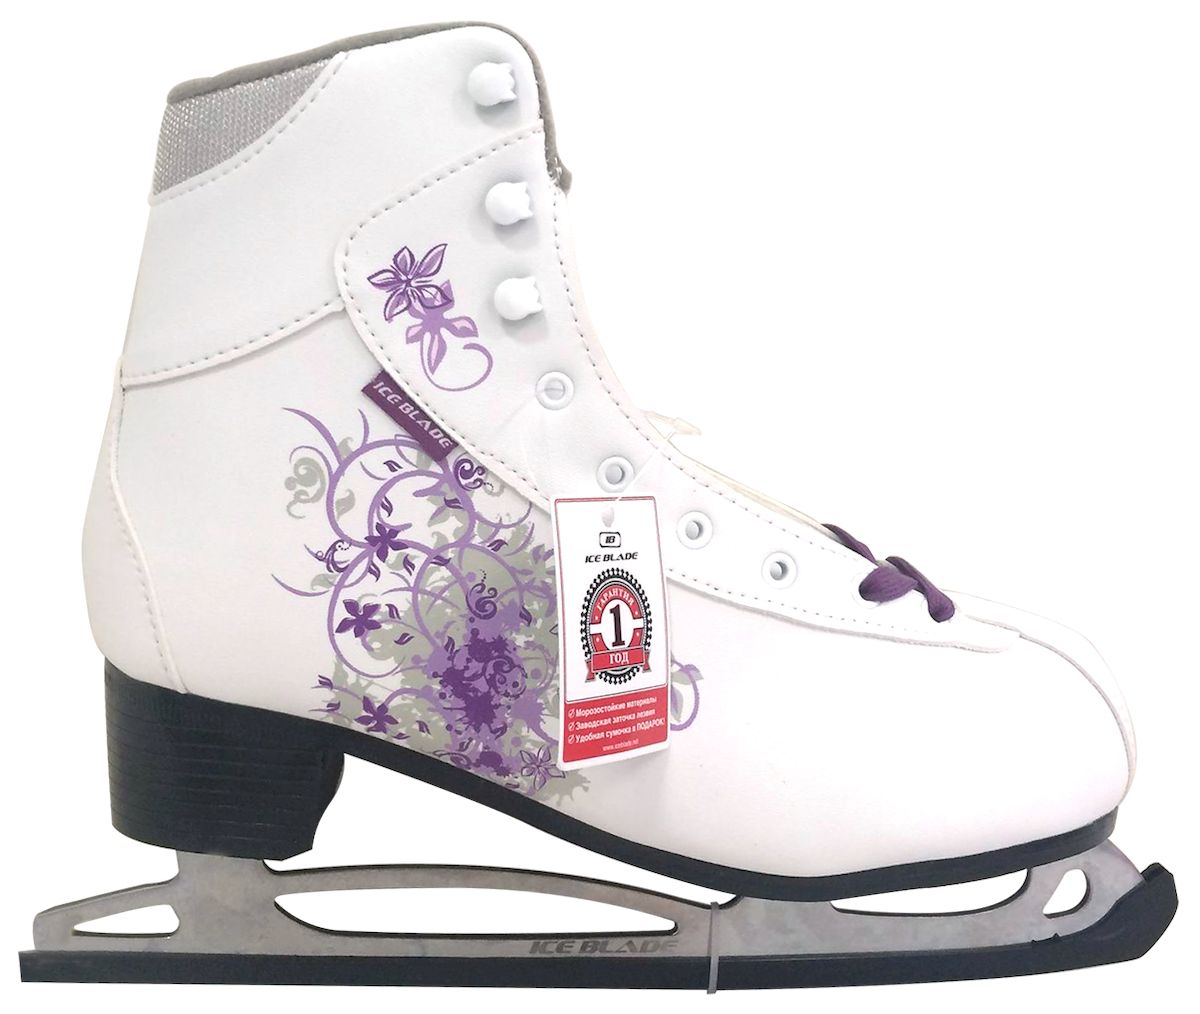 Коньки фигурные Ice Blade Sochi, цвет: белый, фиолетовый. УТ-00004988. Размер 41